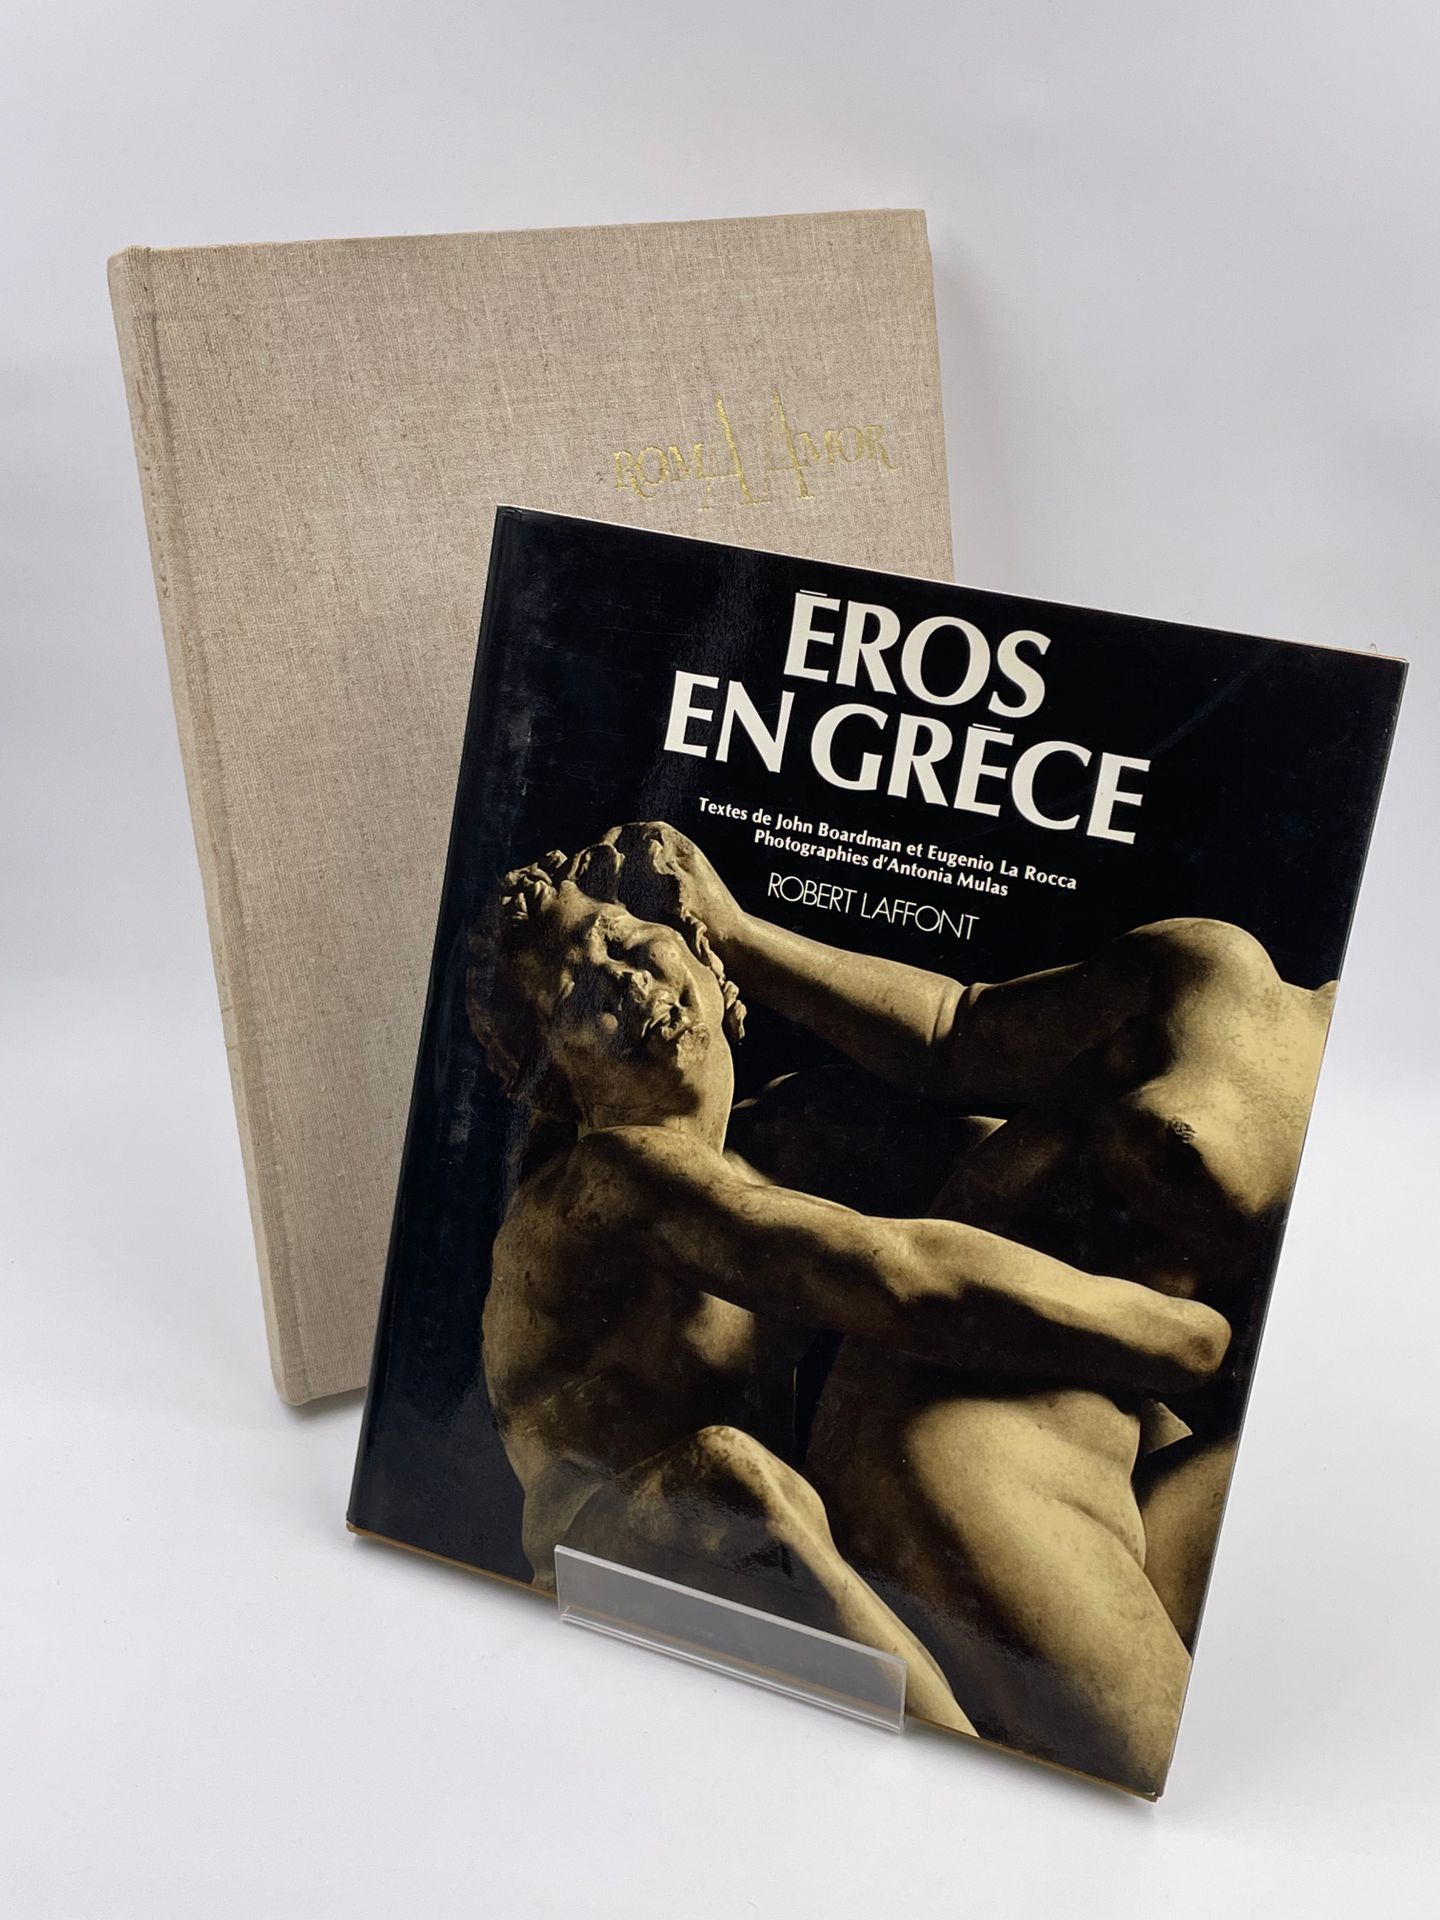 Null 2 Volumes : 

- "EROS EN GRECE",J.Boardman, Eugenio La Rocca, Phot.Antonia &hellip;